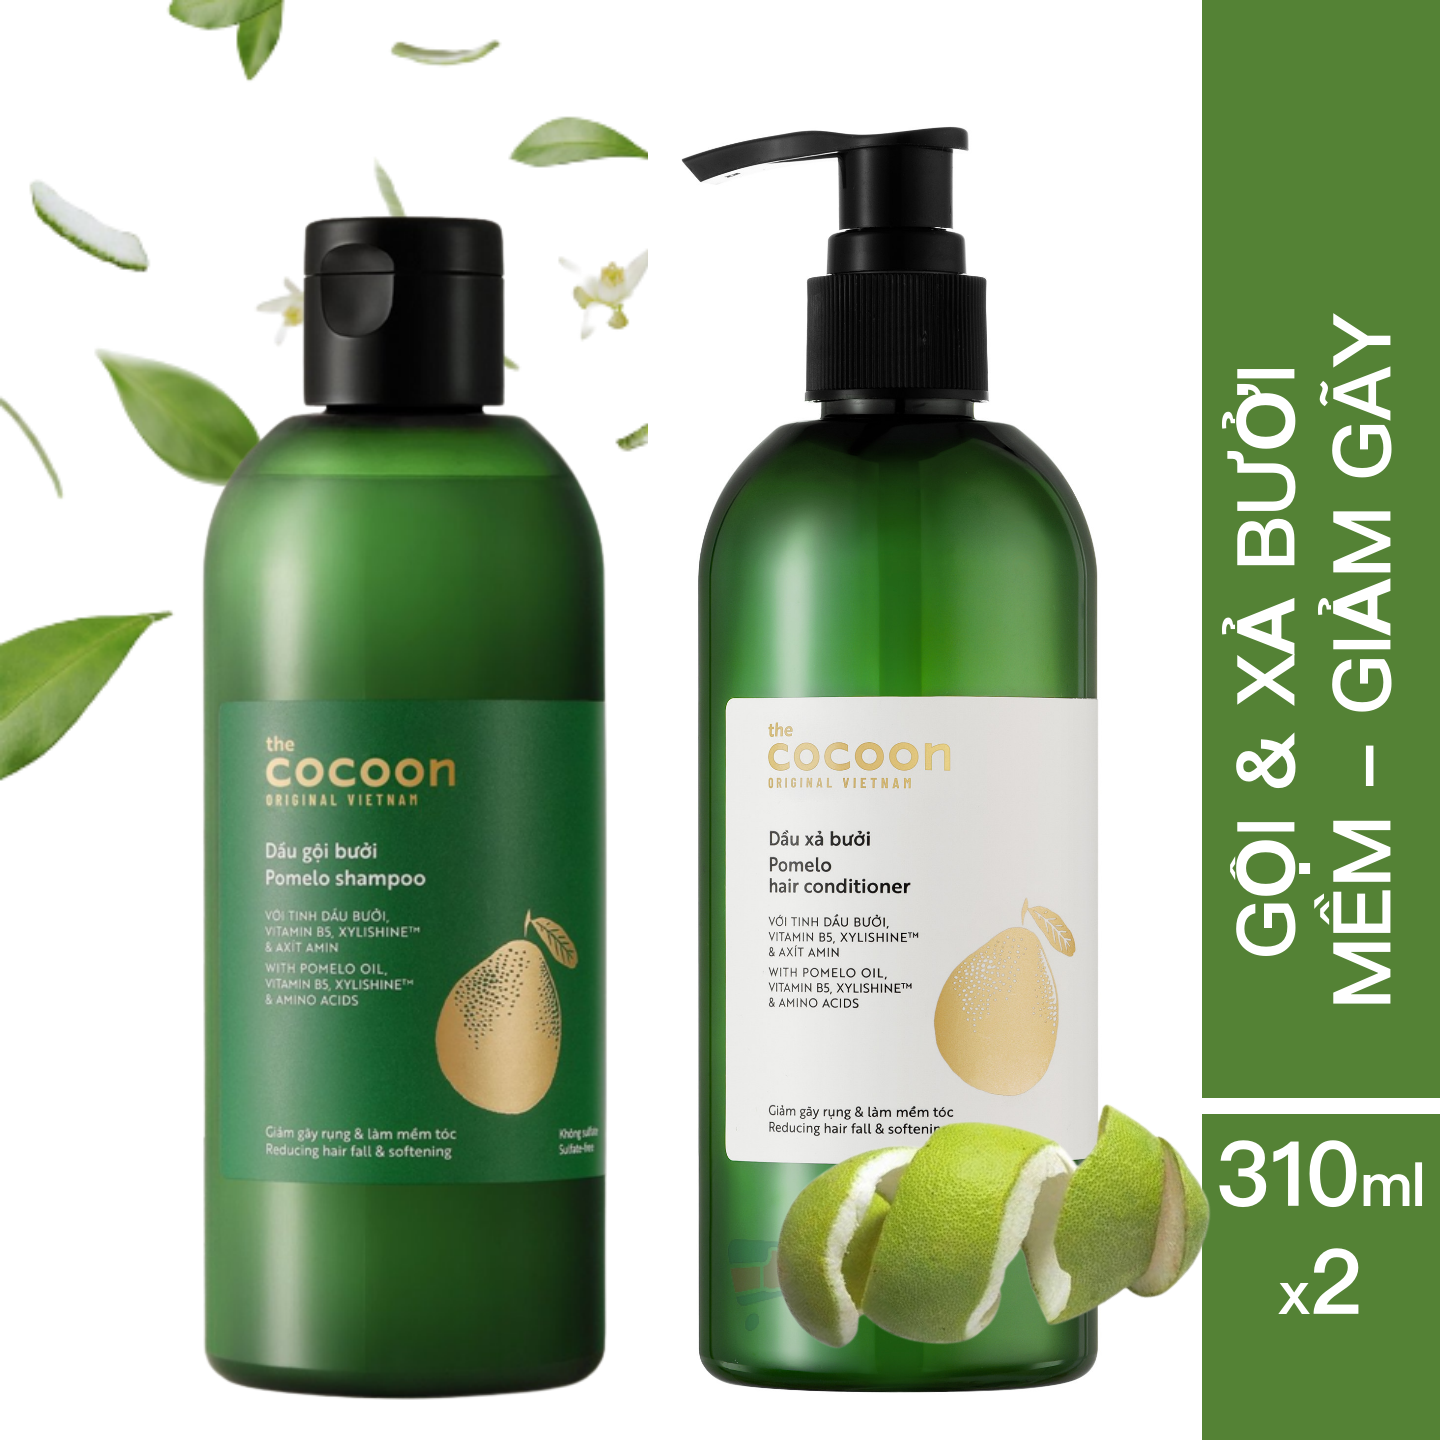 Bộ dầu Gội và Xả bưởi Cocoon cung cấp dưỡng chất và bổ sung độ ẩm cho tóc (310ml x 2) - Giúp tóc mềm và giảm gãy rụng